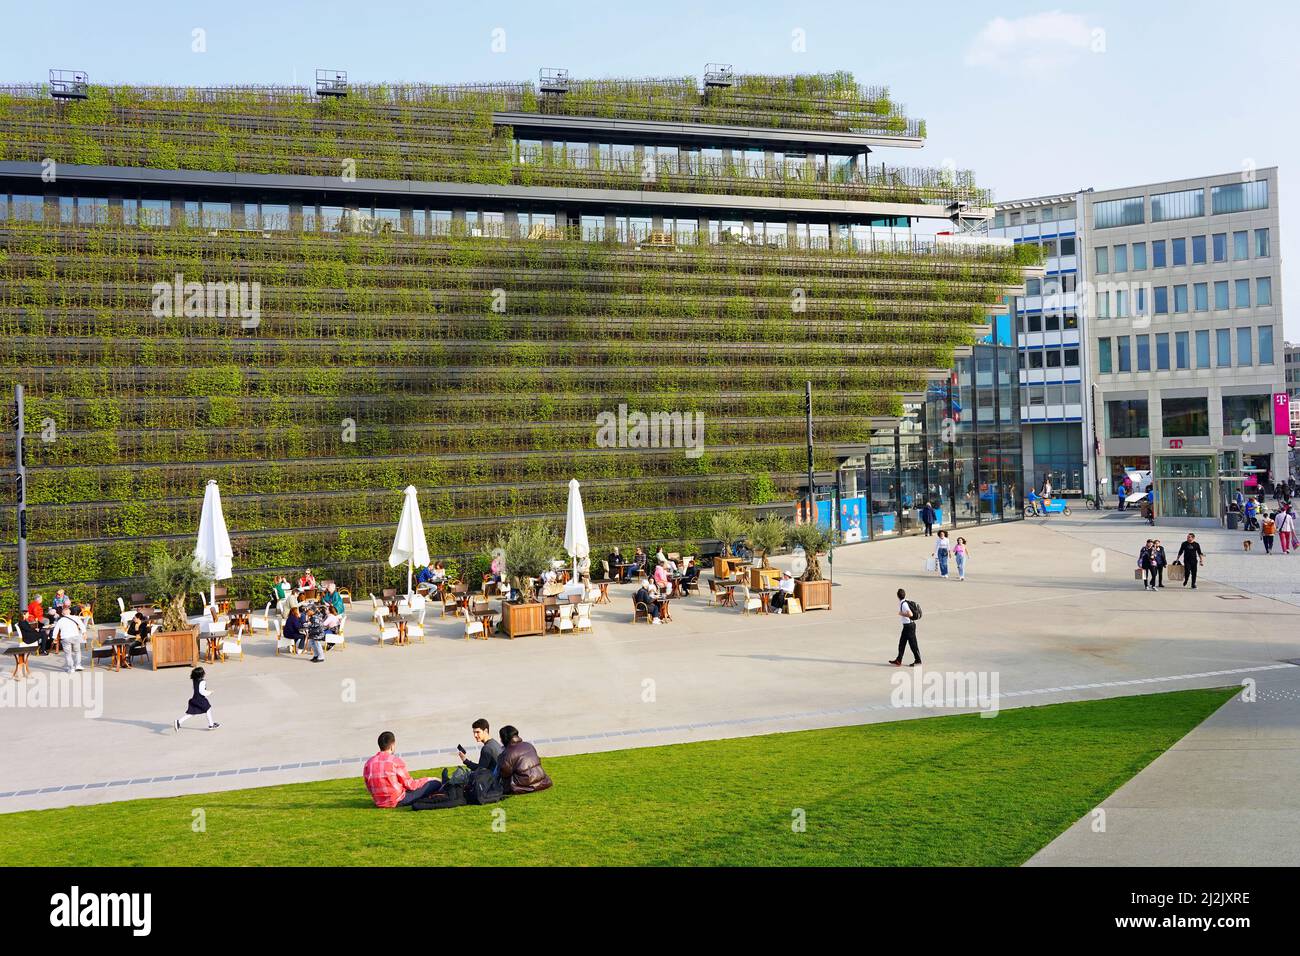 Der innovative Kö-Bogen II in der Düsseldorfer Innenstadt von Ingenhoven Architects mit klimafreundlichem Gebäude, das mit Hainbuchenhecken bedeckt ist. Stockfoto